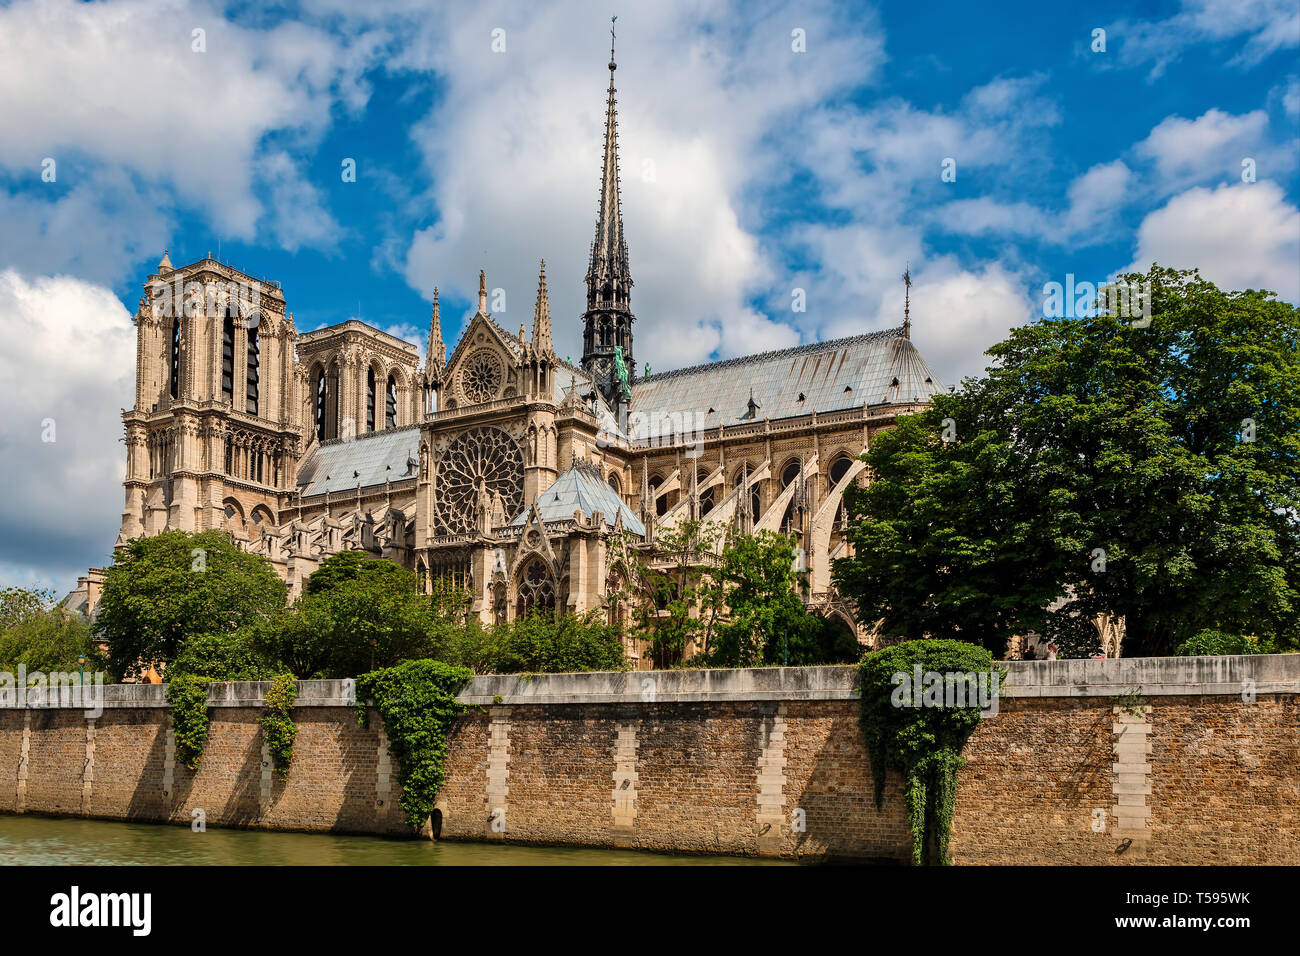 Vue de la célèbre cathédrale Notre-Dame sous ciel magnifique à Paris, France. Banque D'Images